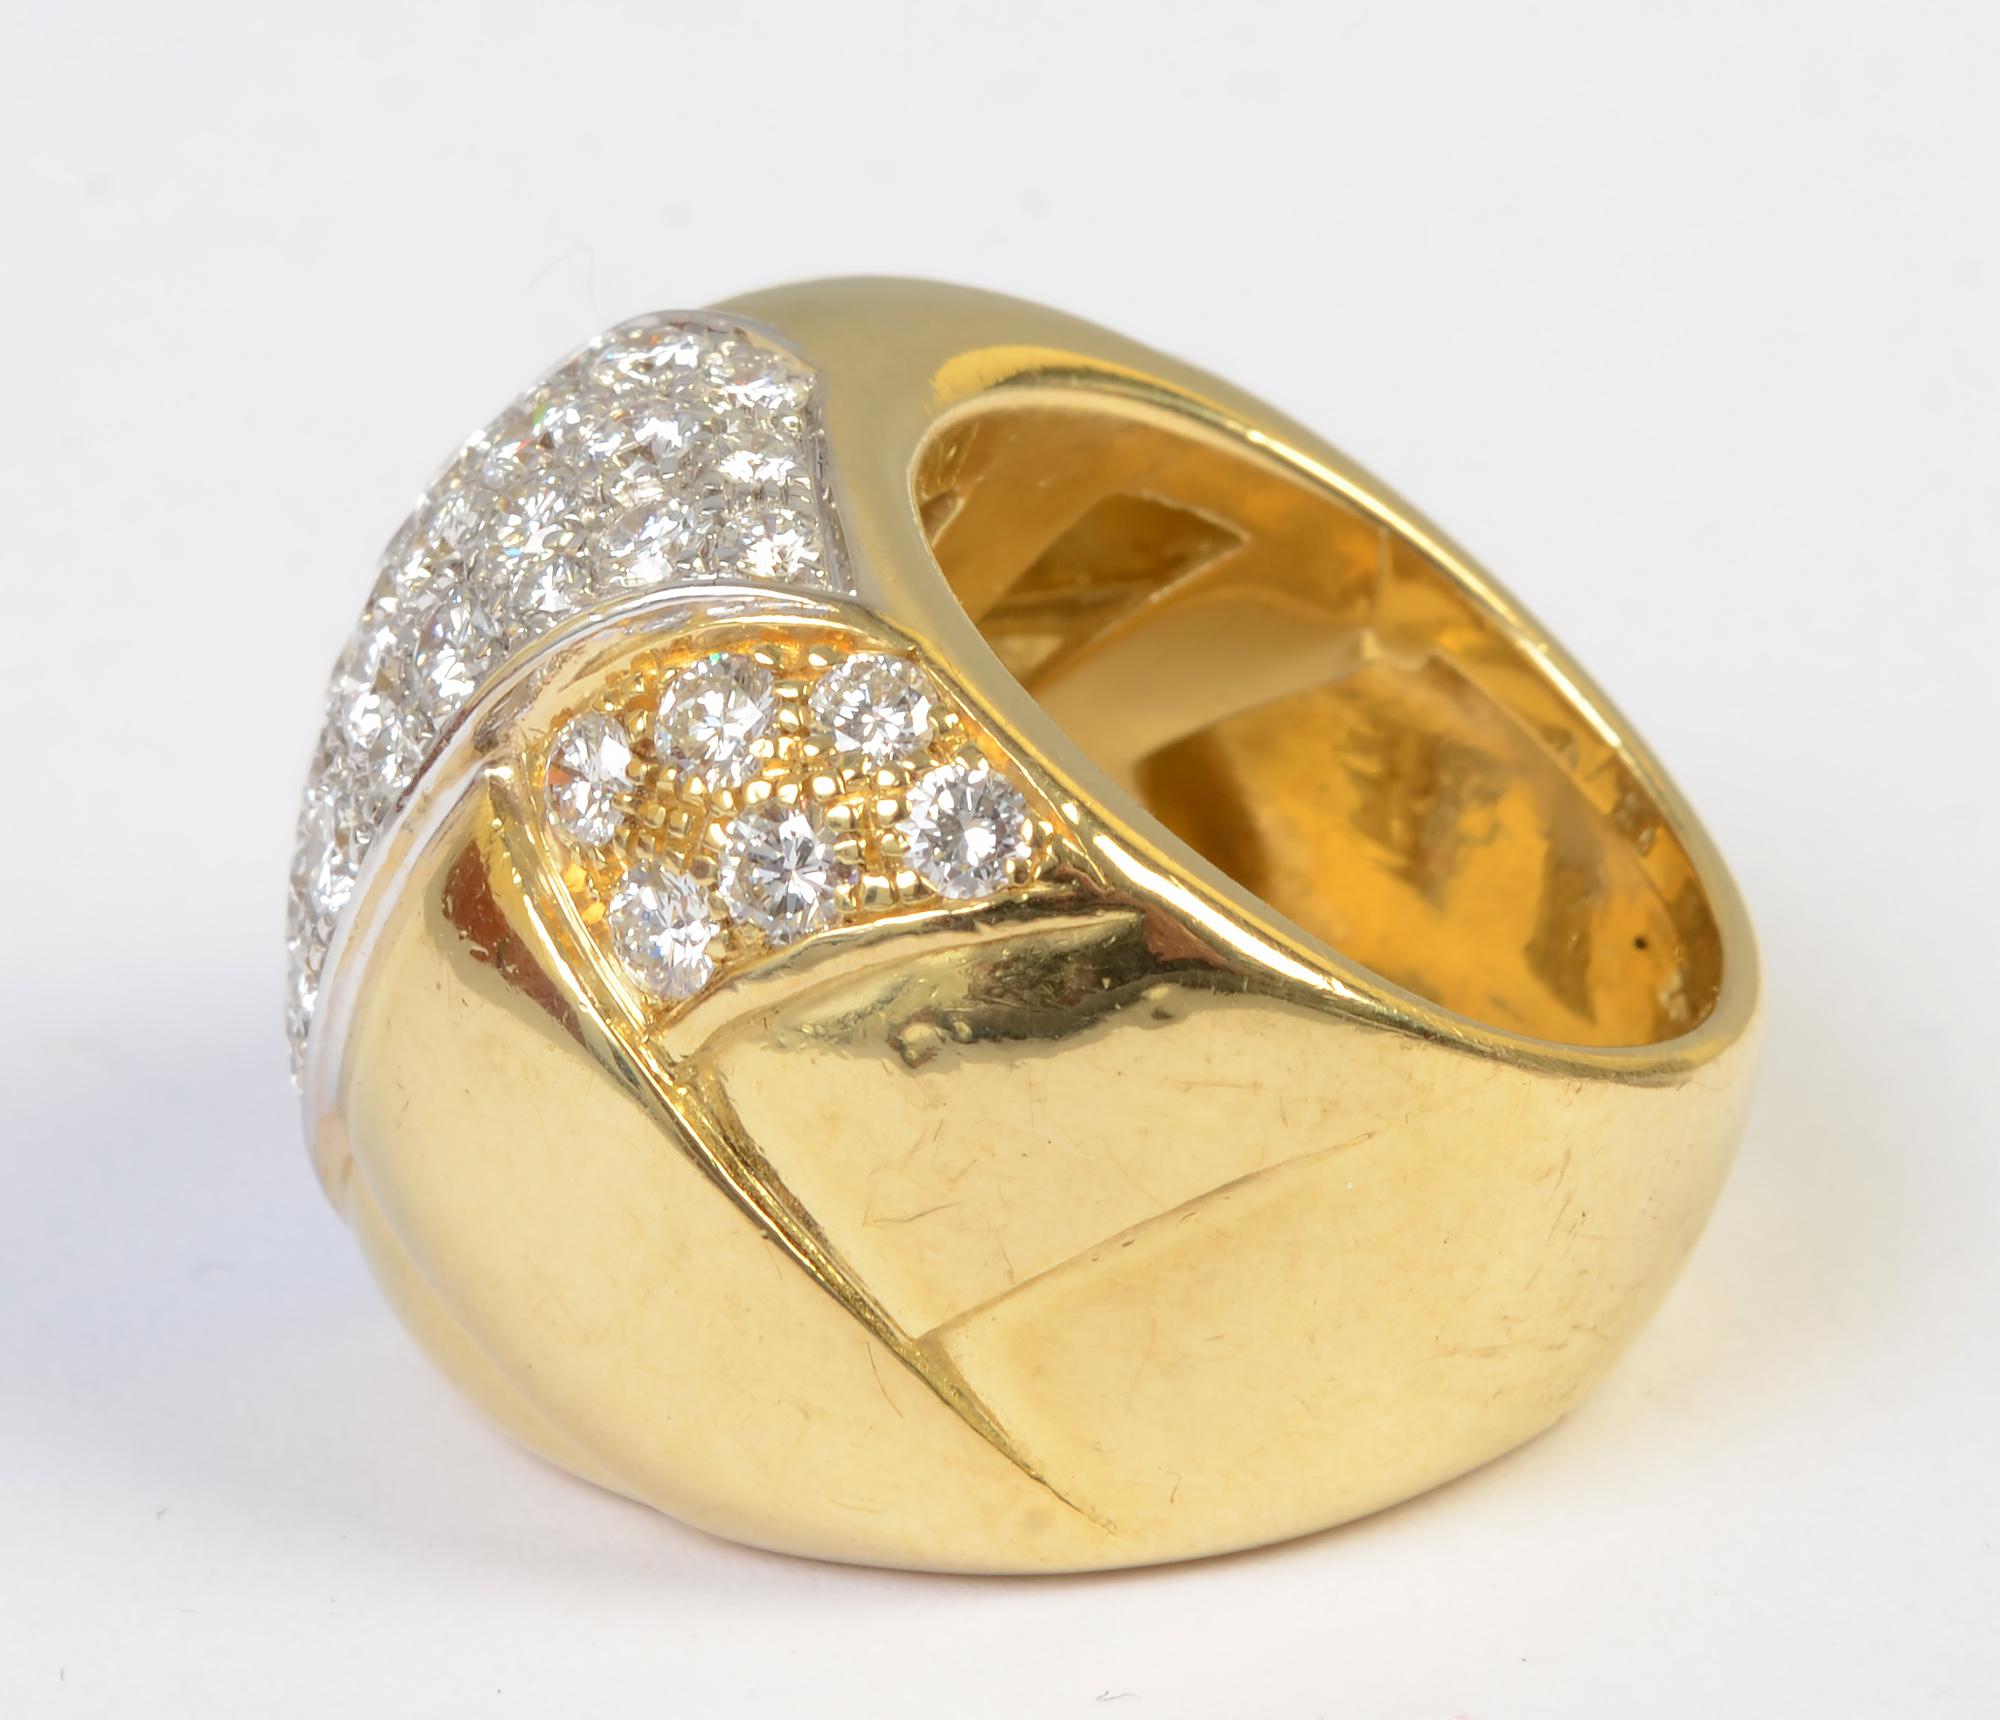 Bague en or à large bande absolument éblouissante avec 4,25 carats de diamants VS ; couleur F. L'anneau est bombé et présente un motif légèrement tressé dans l'or. Les diamants sont sertis en diagonale, avec de plus petites grappes de pierres